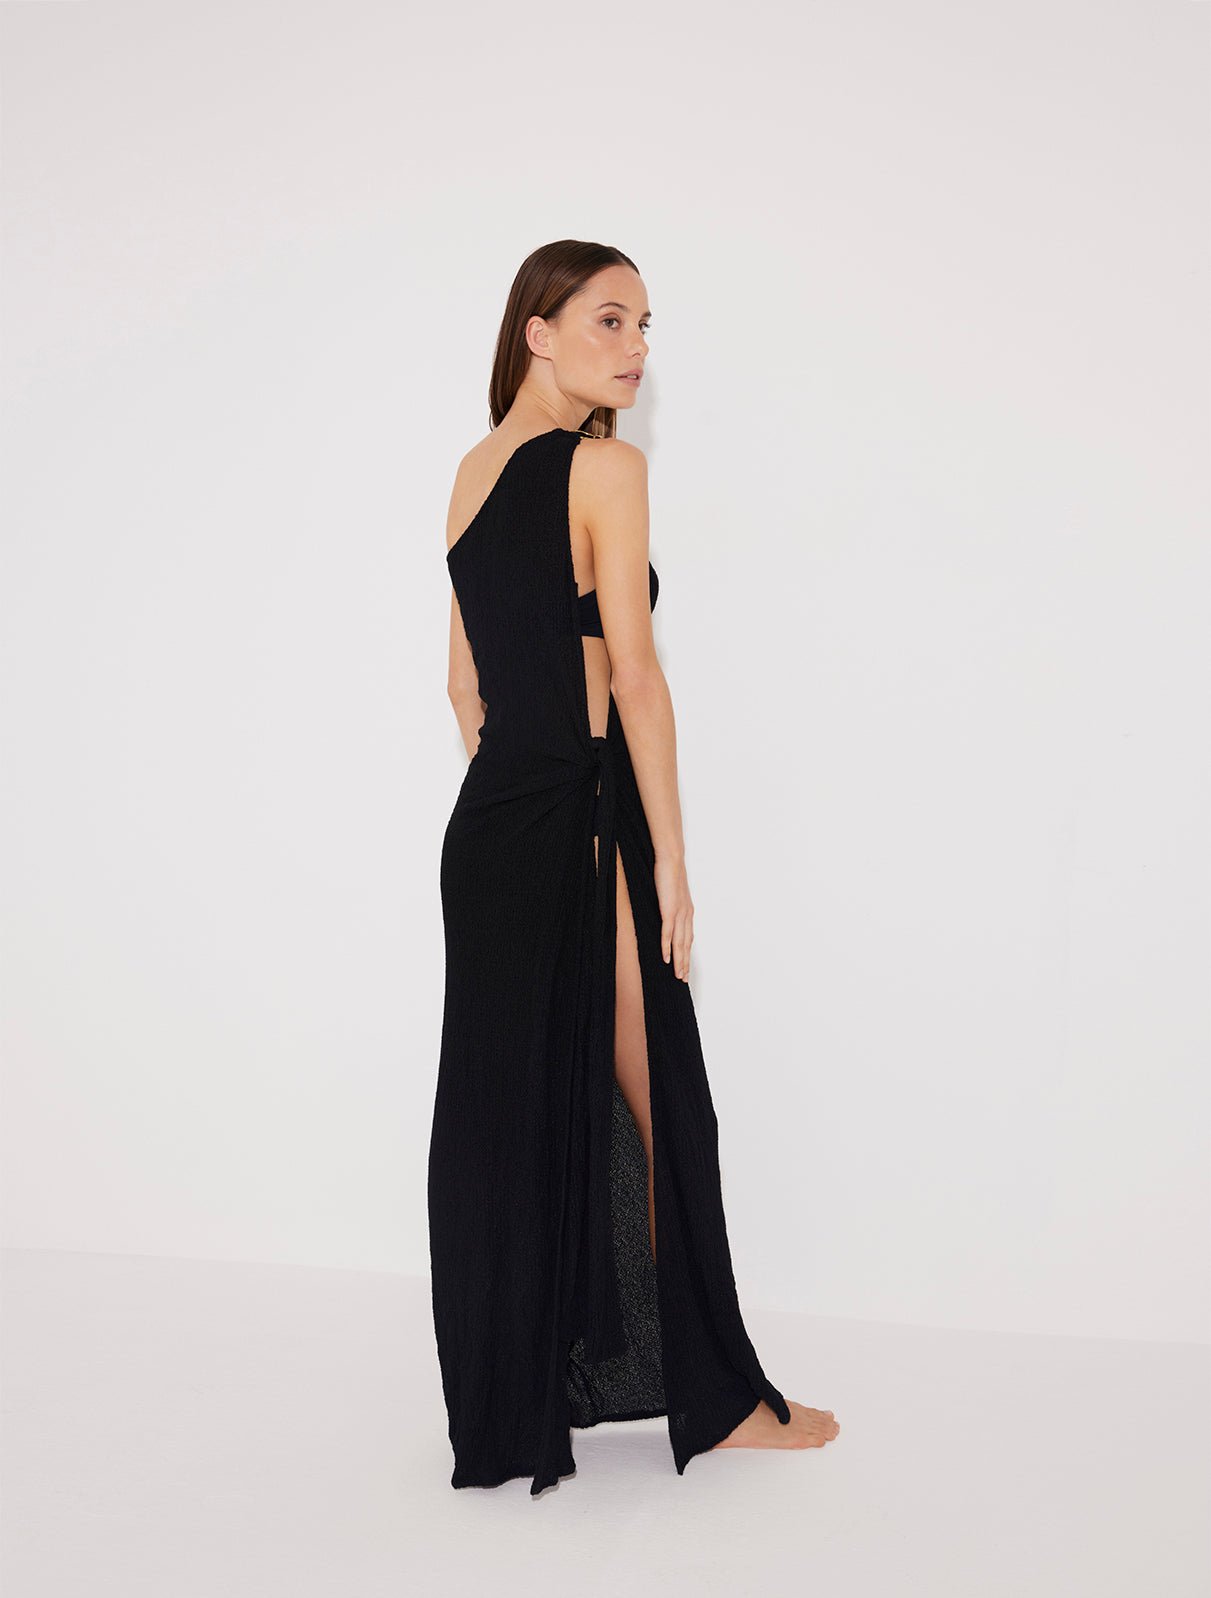 Stefania Black Dress - One Shoulder Maxi Dress | MOEVA Moeva